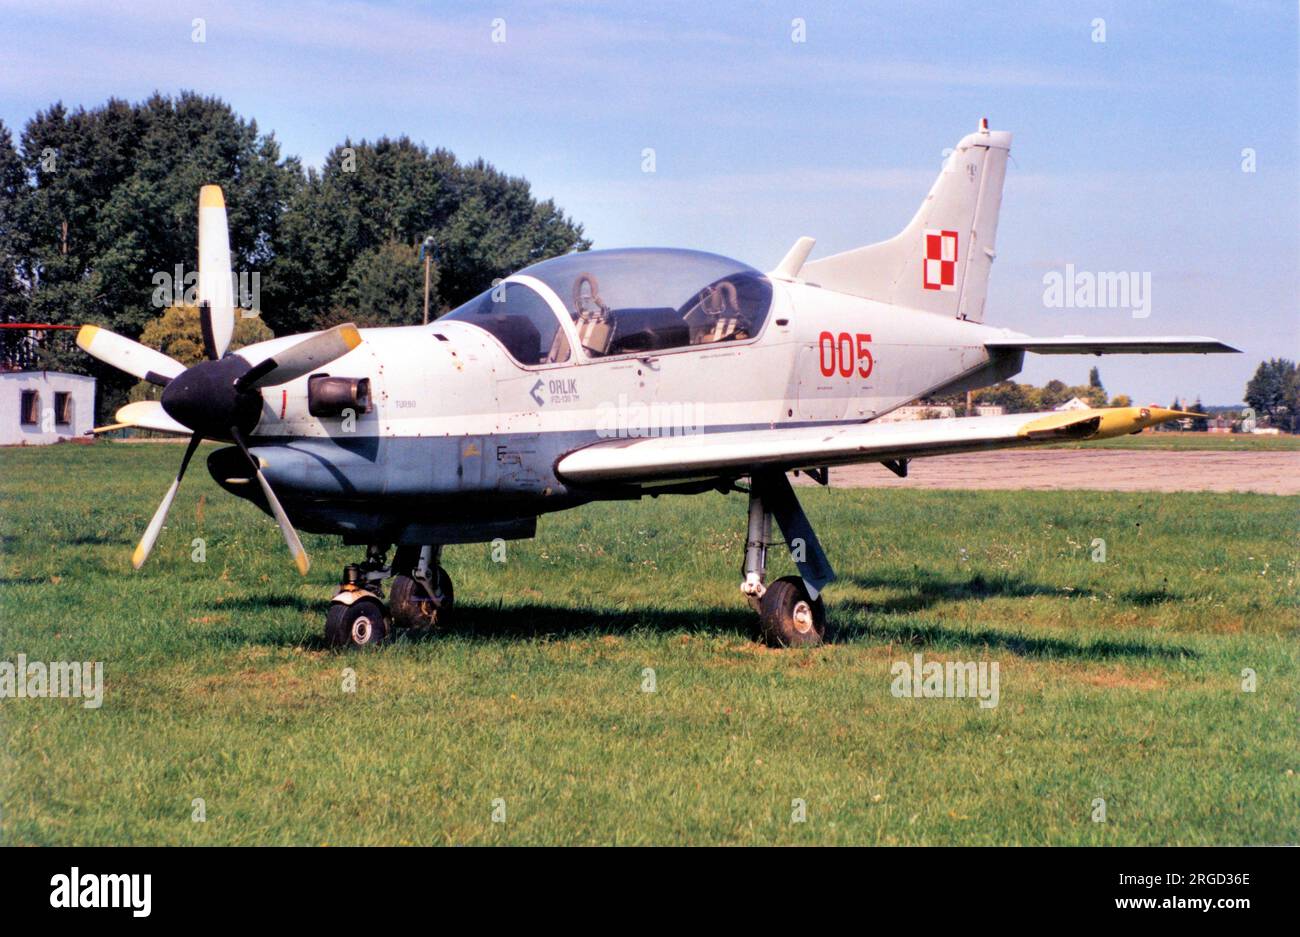 PZL-Okecie PZL-130TM Orlik 005 (msn 01870005), in mostra al Muzeum Sil Powietrznych, Deblin. Foto Stock